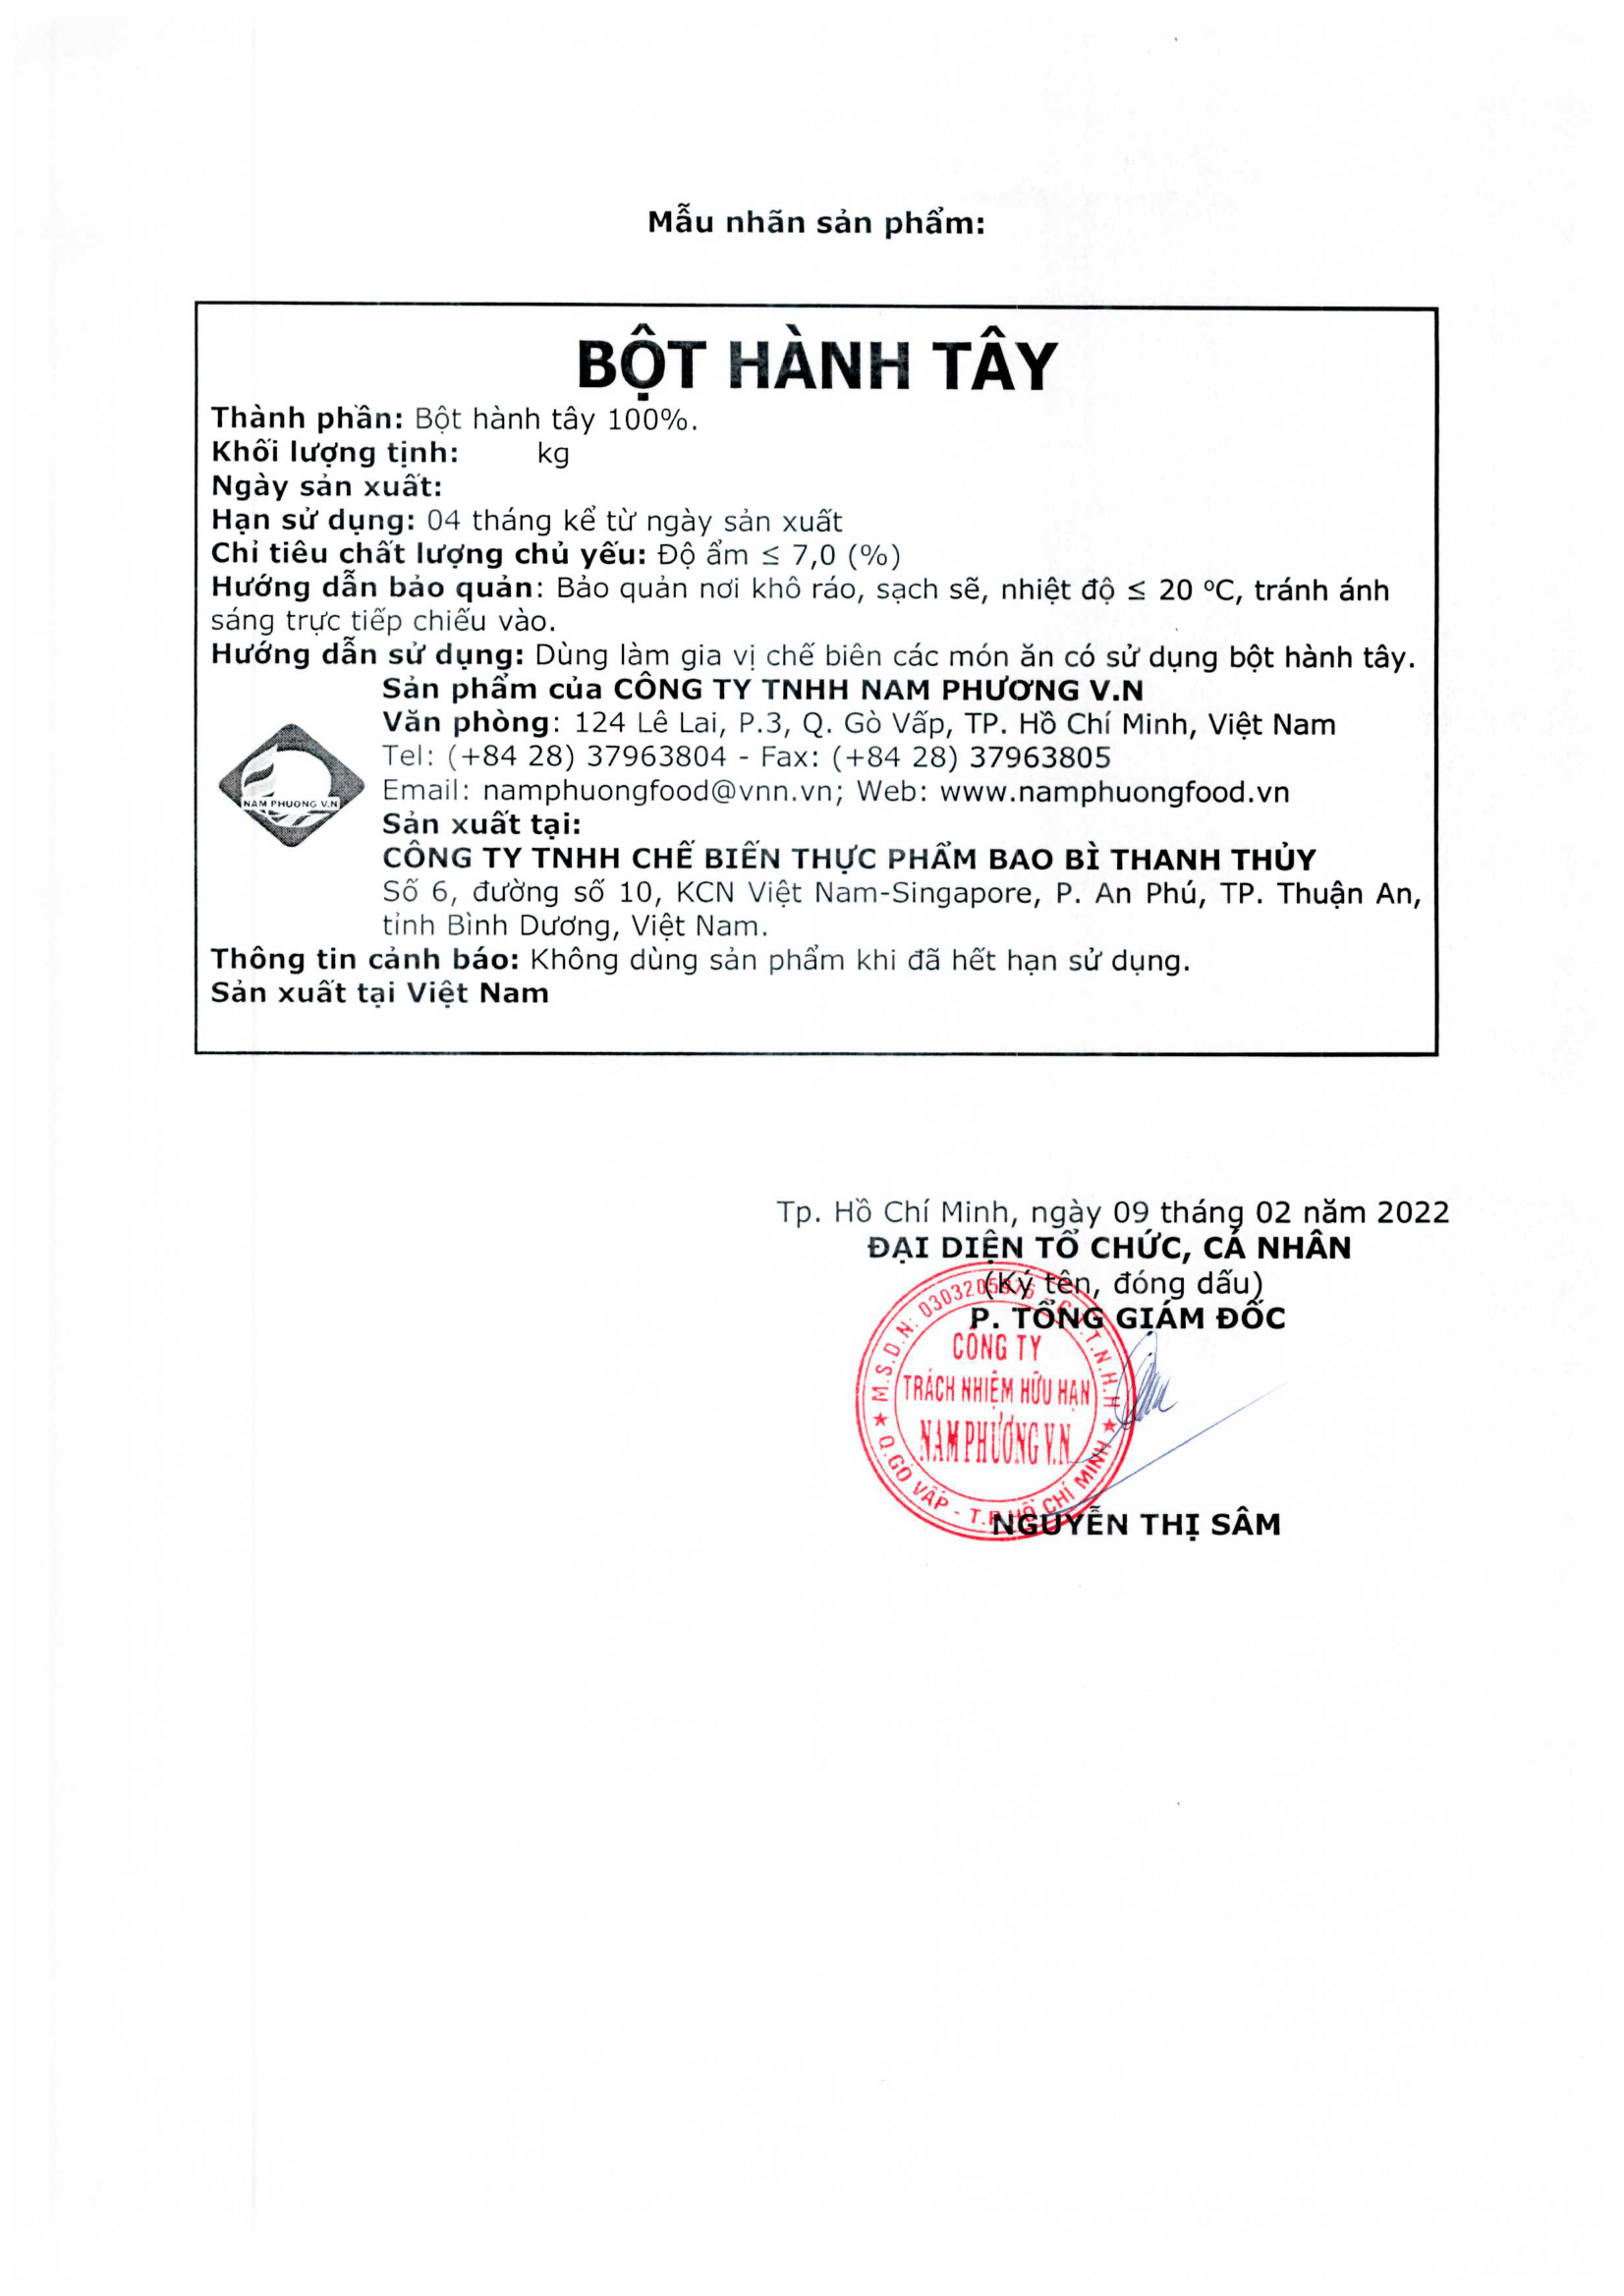 tcb-bot-hanh-tay-3